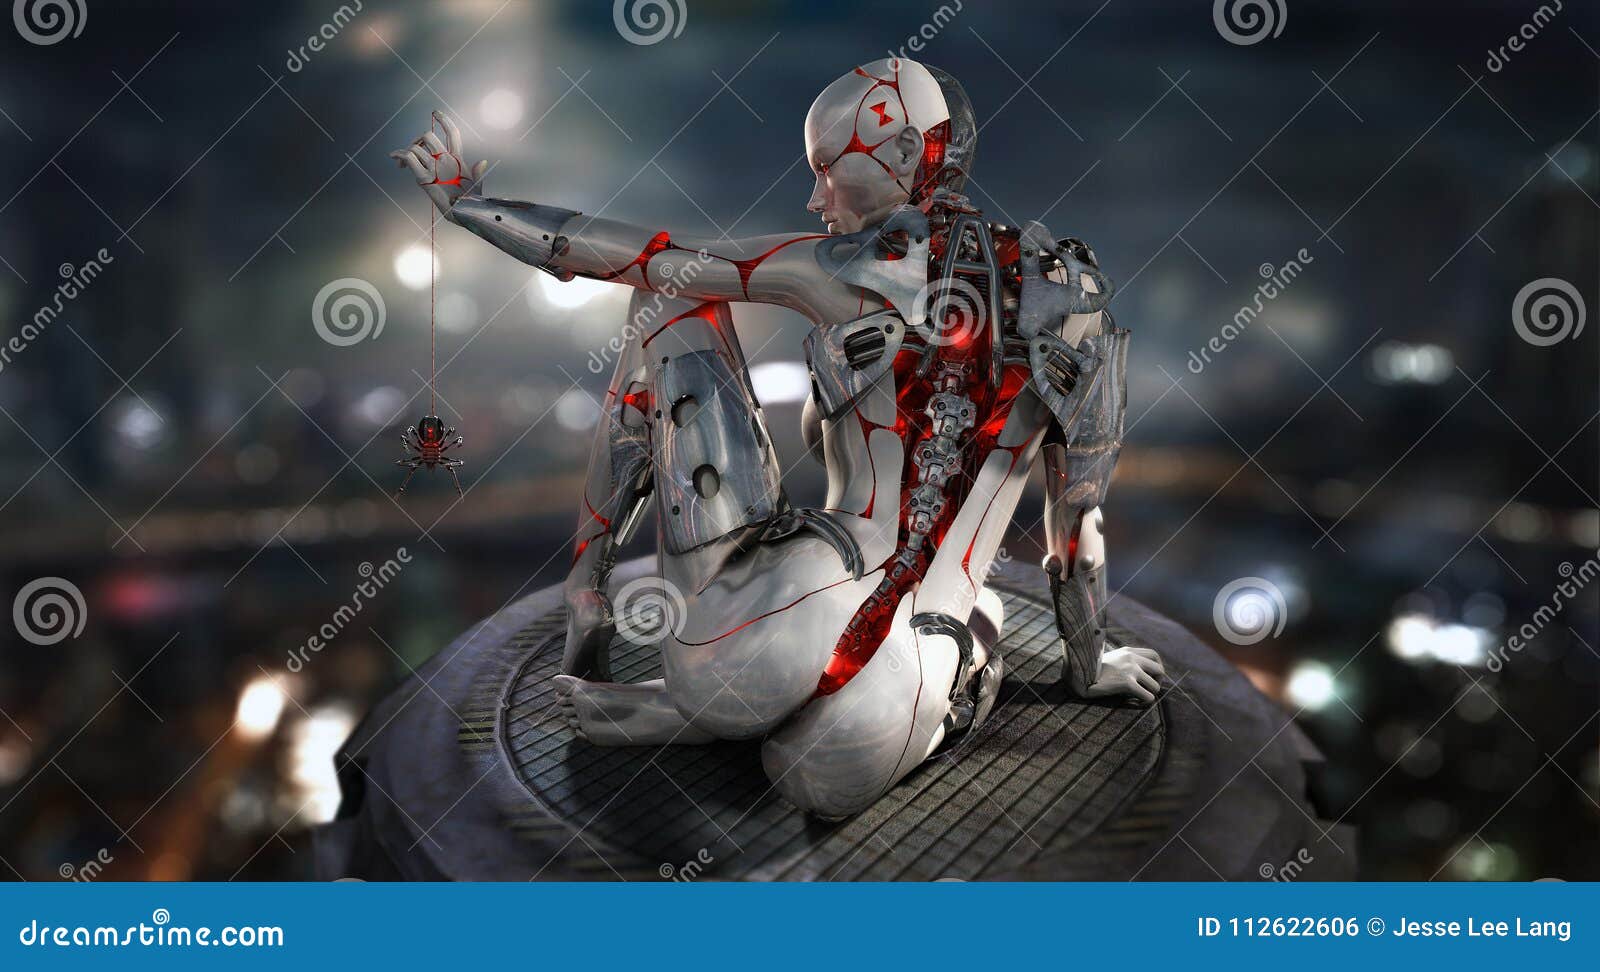 female cyborg character